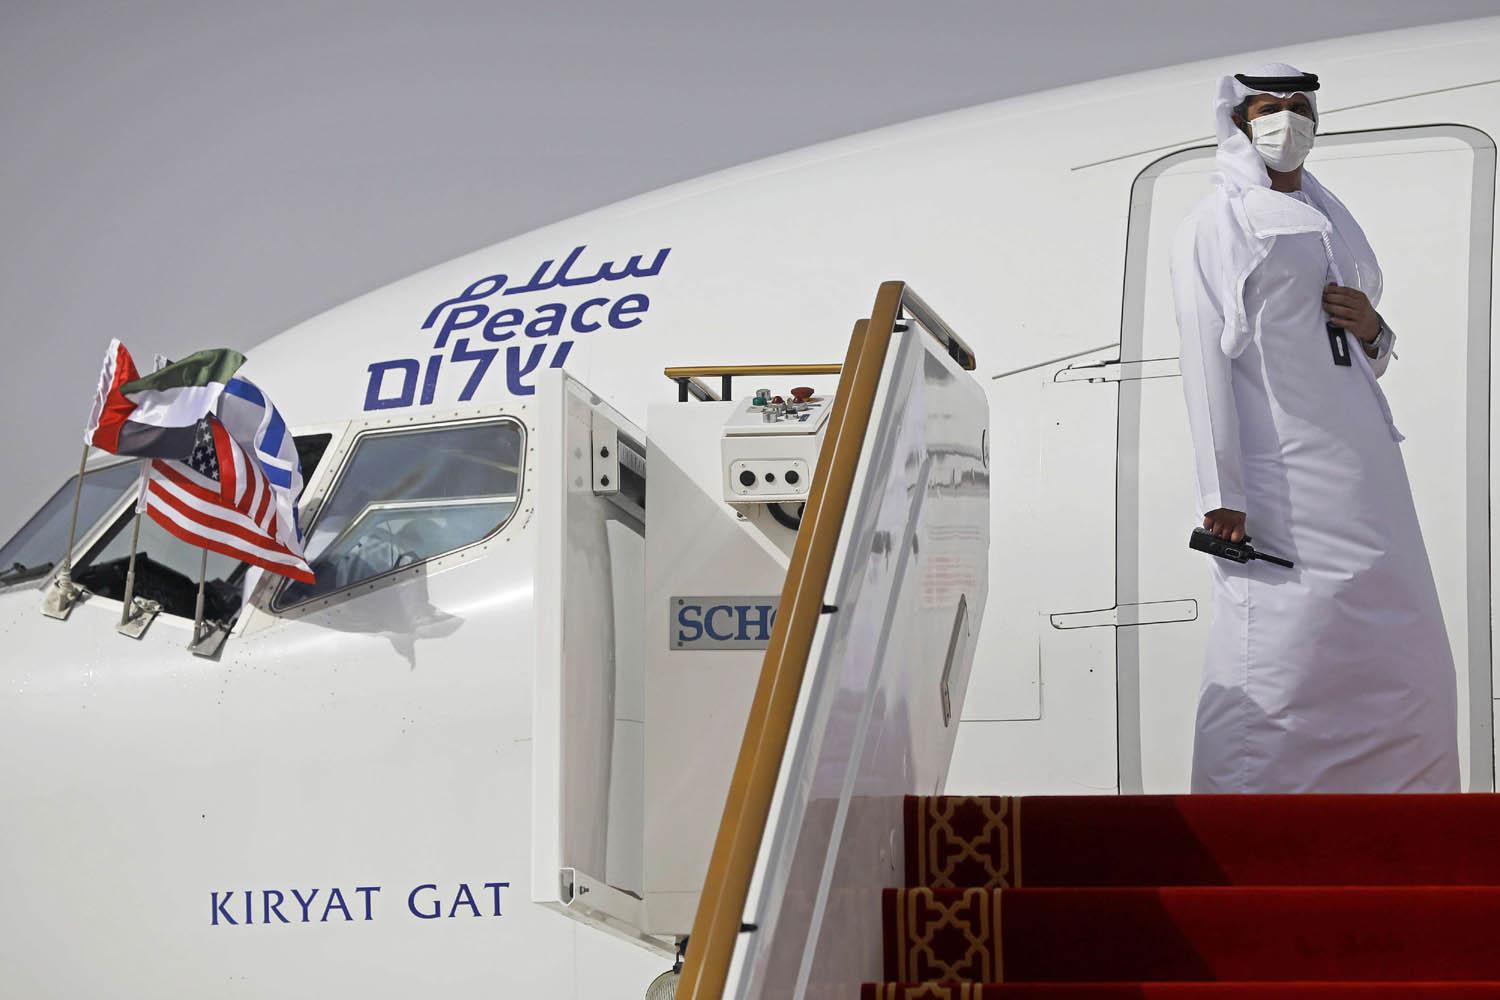 موظف أرضي اماراتي أمام طائرة العال في مكار أبوظبي